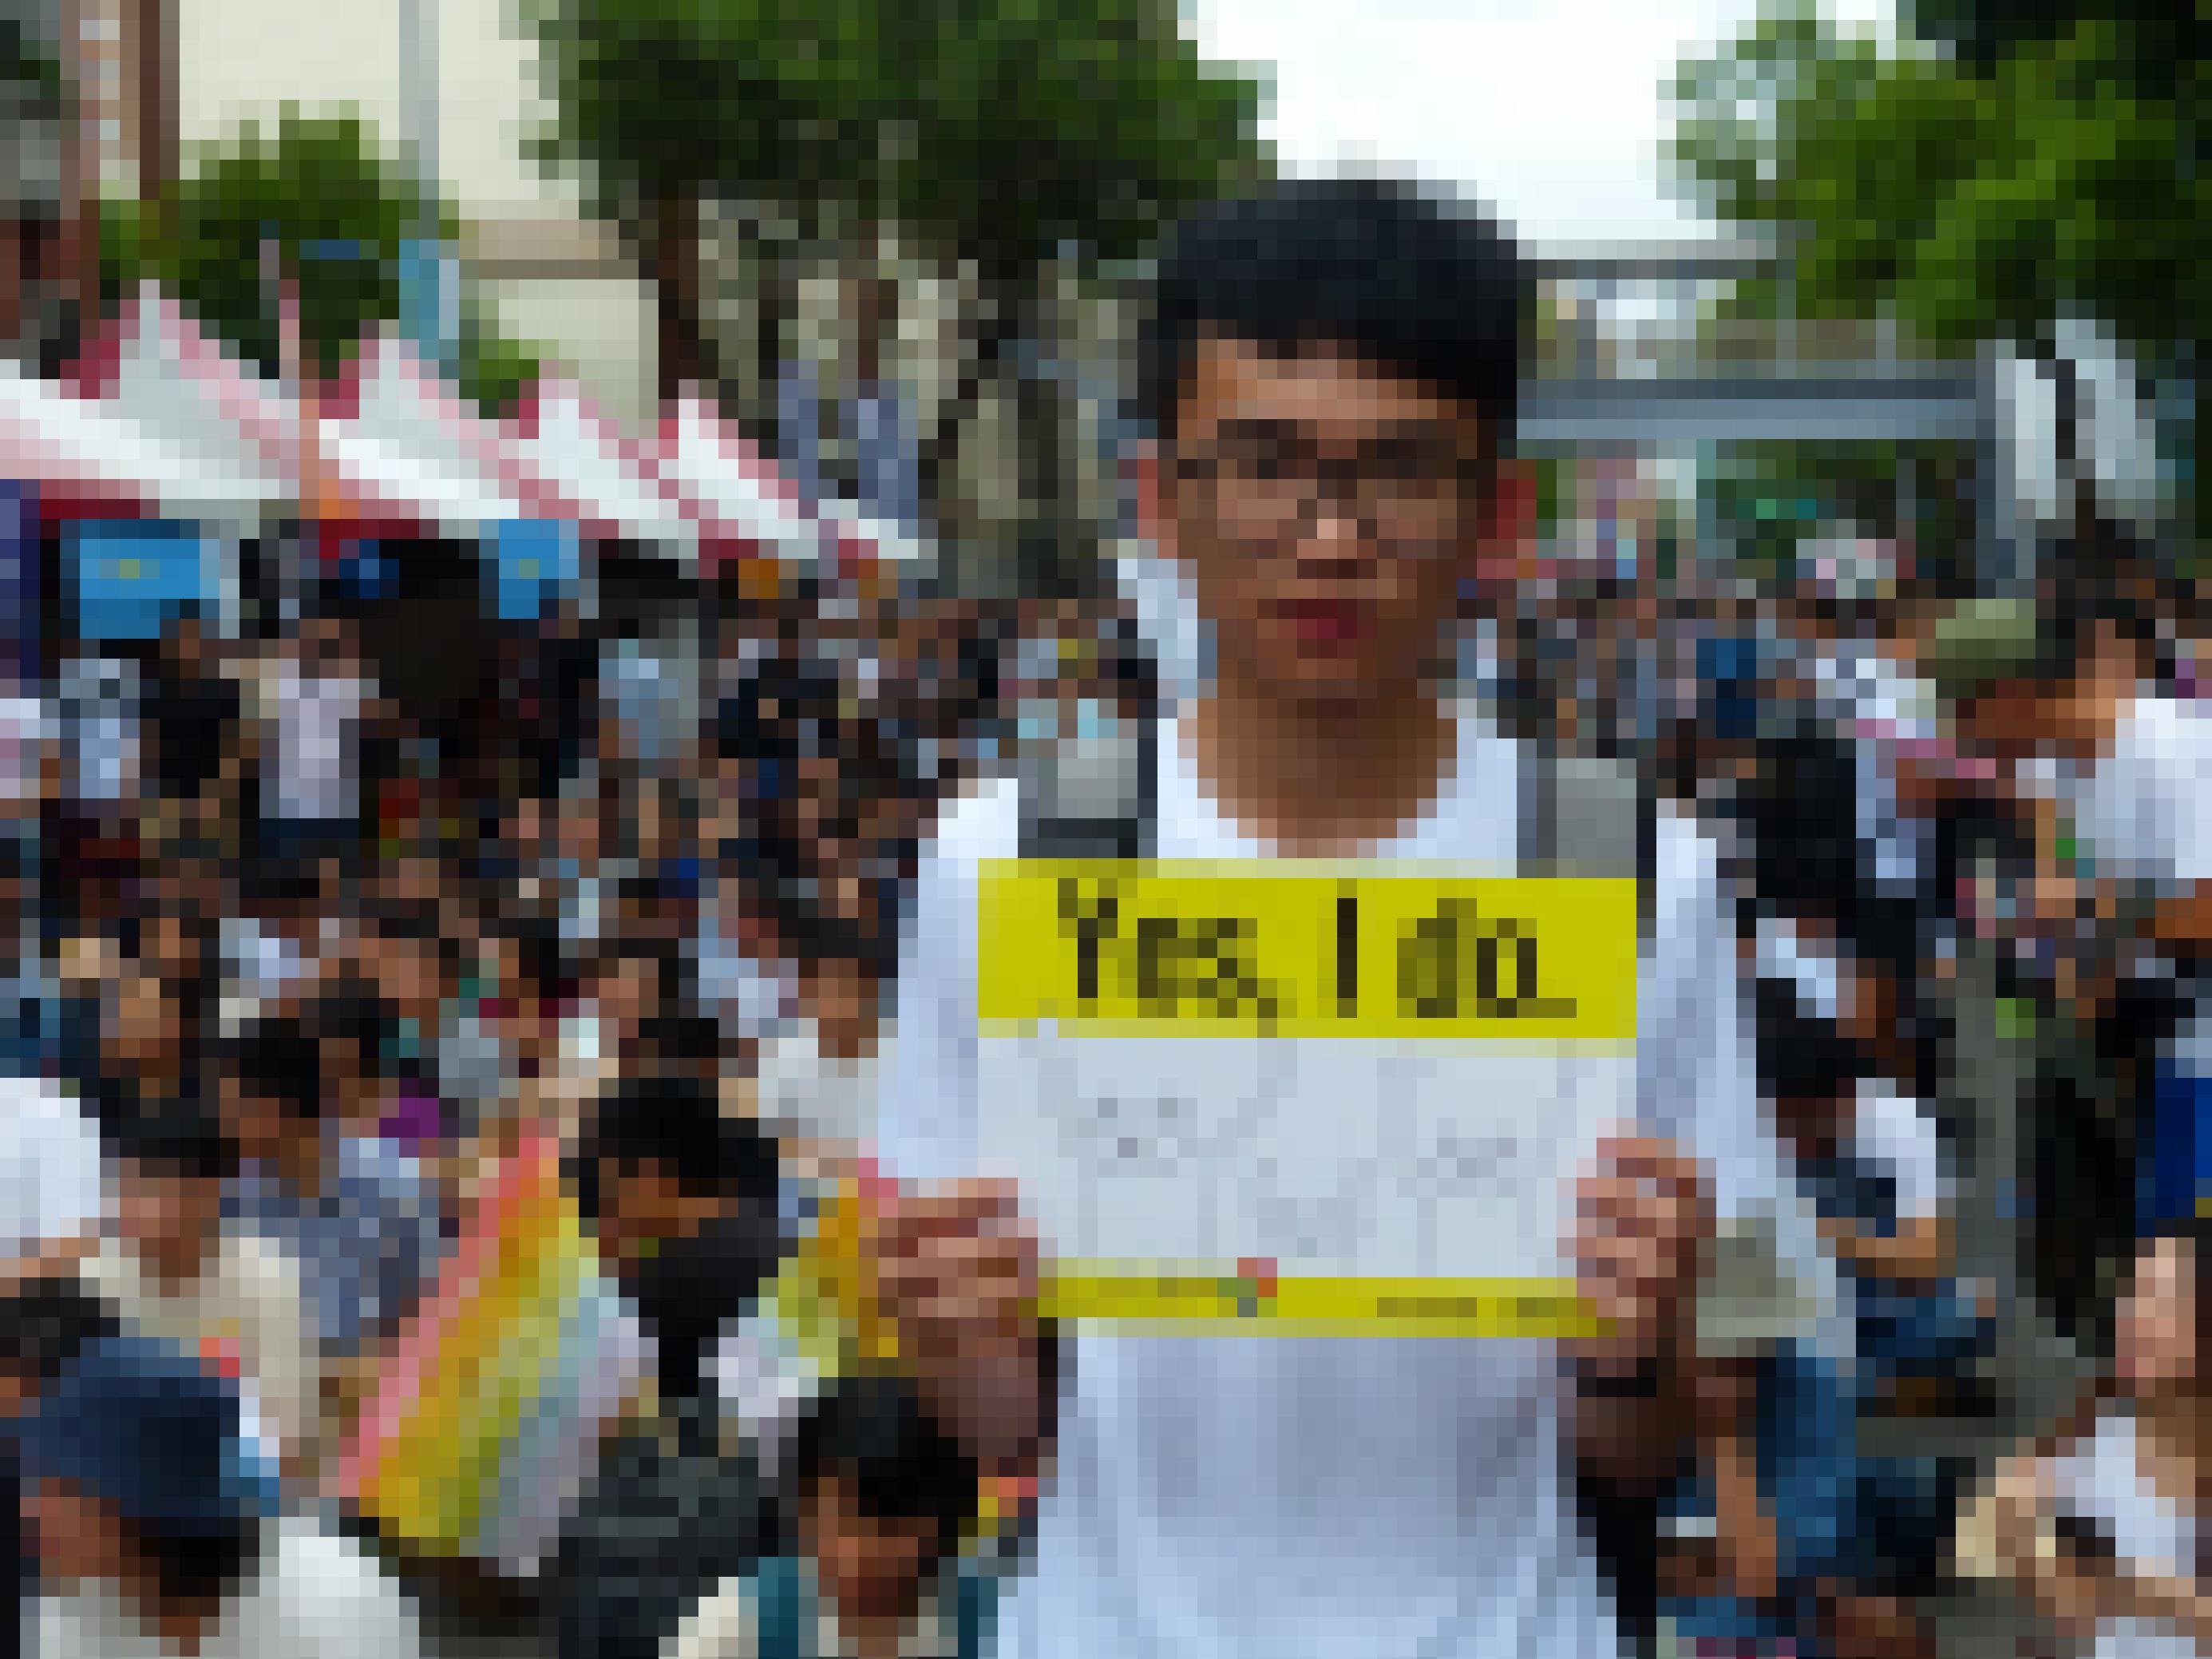 Eine Demonstration in Taipeh. Ein junger Mann steht etwas erhöht über einer Menschenmenge und hält ein Plakat mit der Aufschrift „Yes, I do“ in die Kamera.